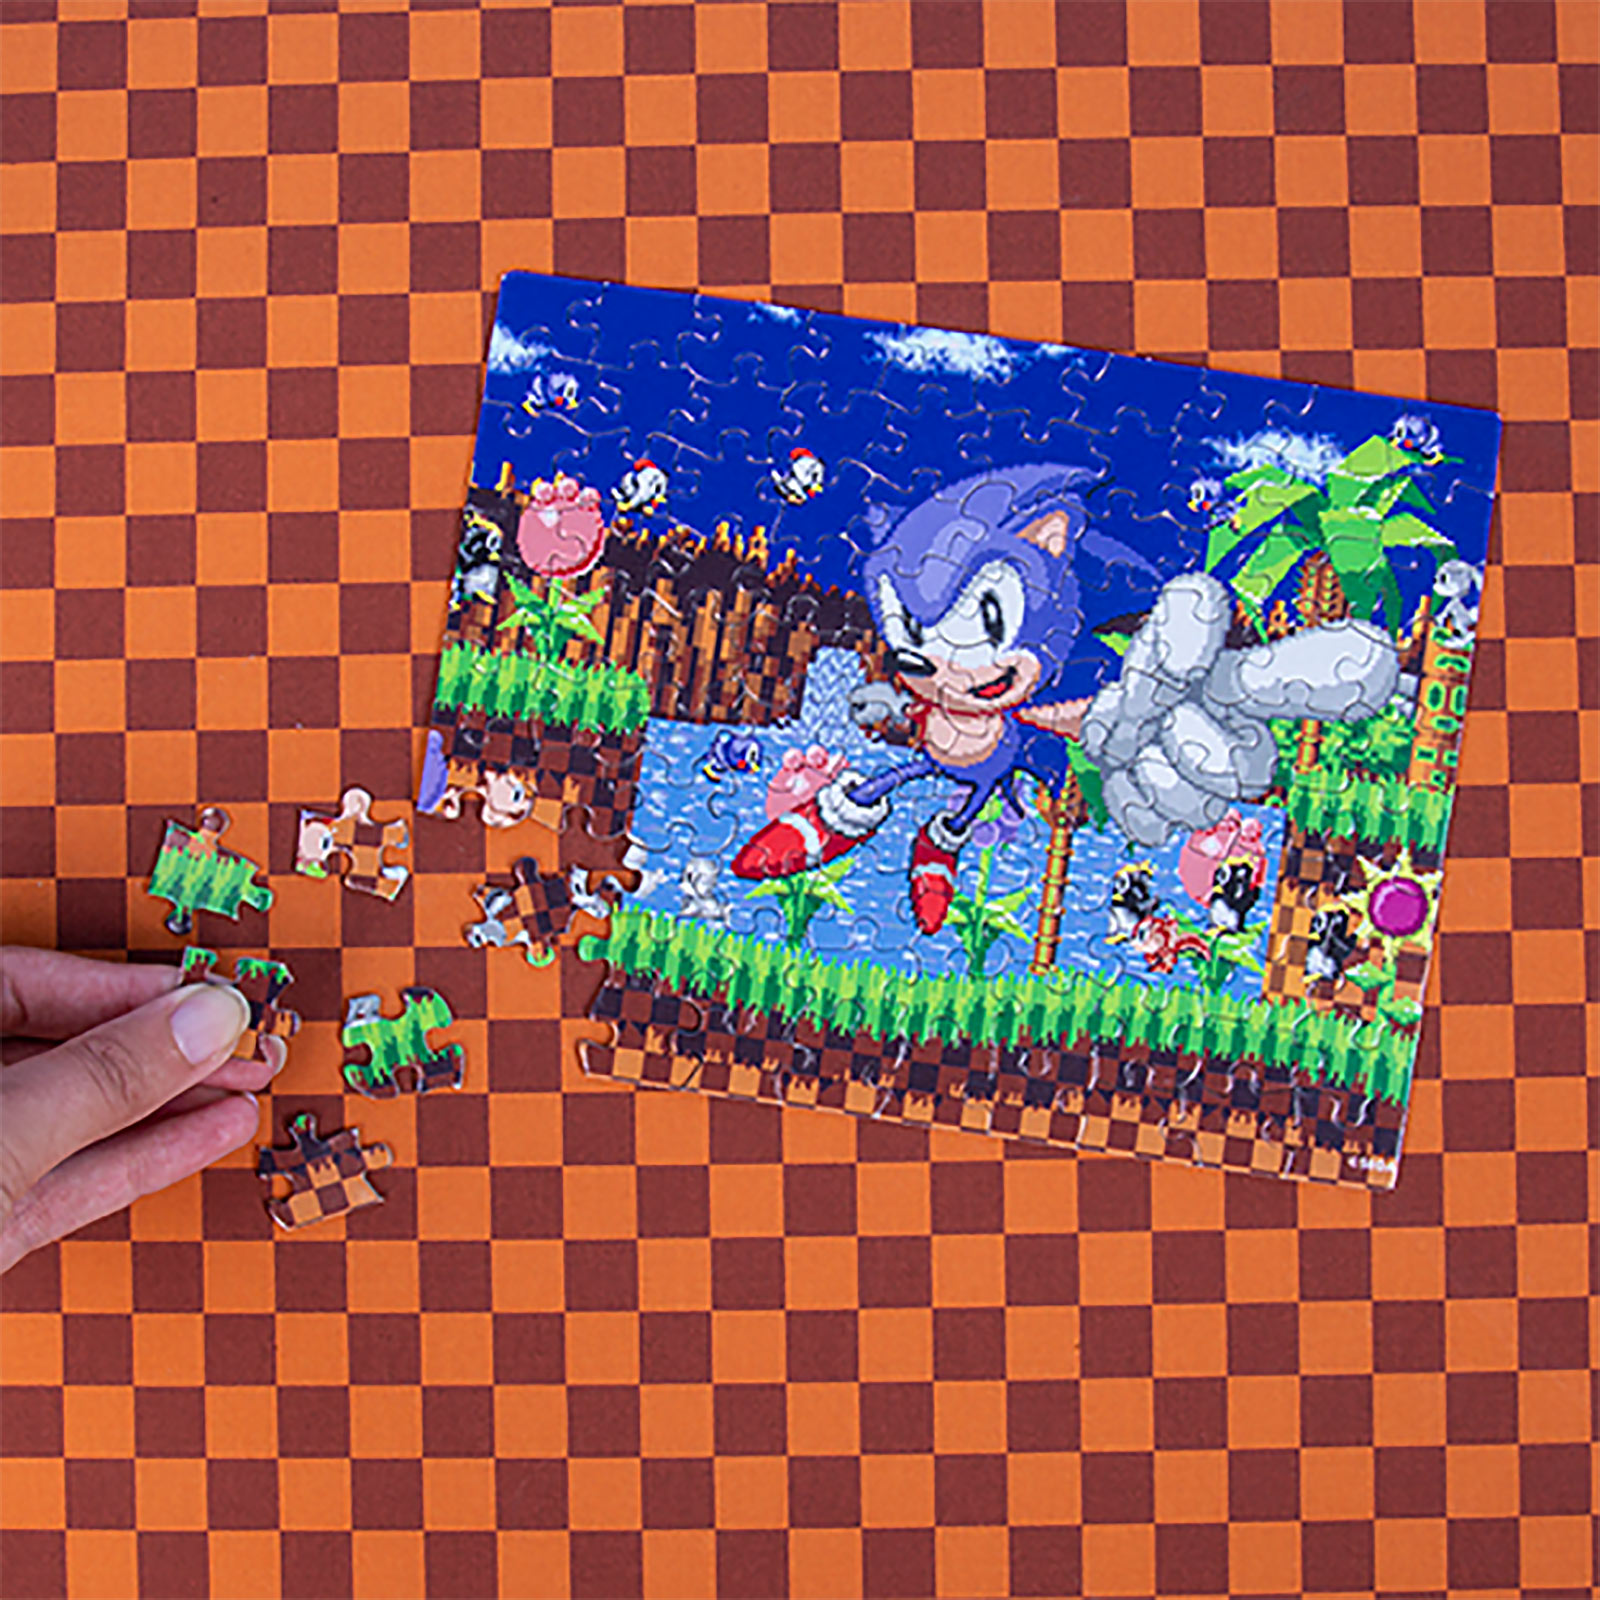 Sonic the Hedgehog - Geschenkset Tasse und Puzzle